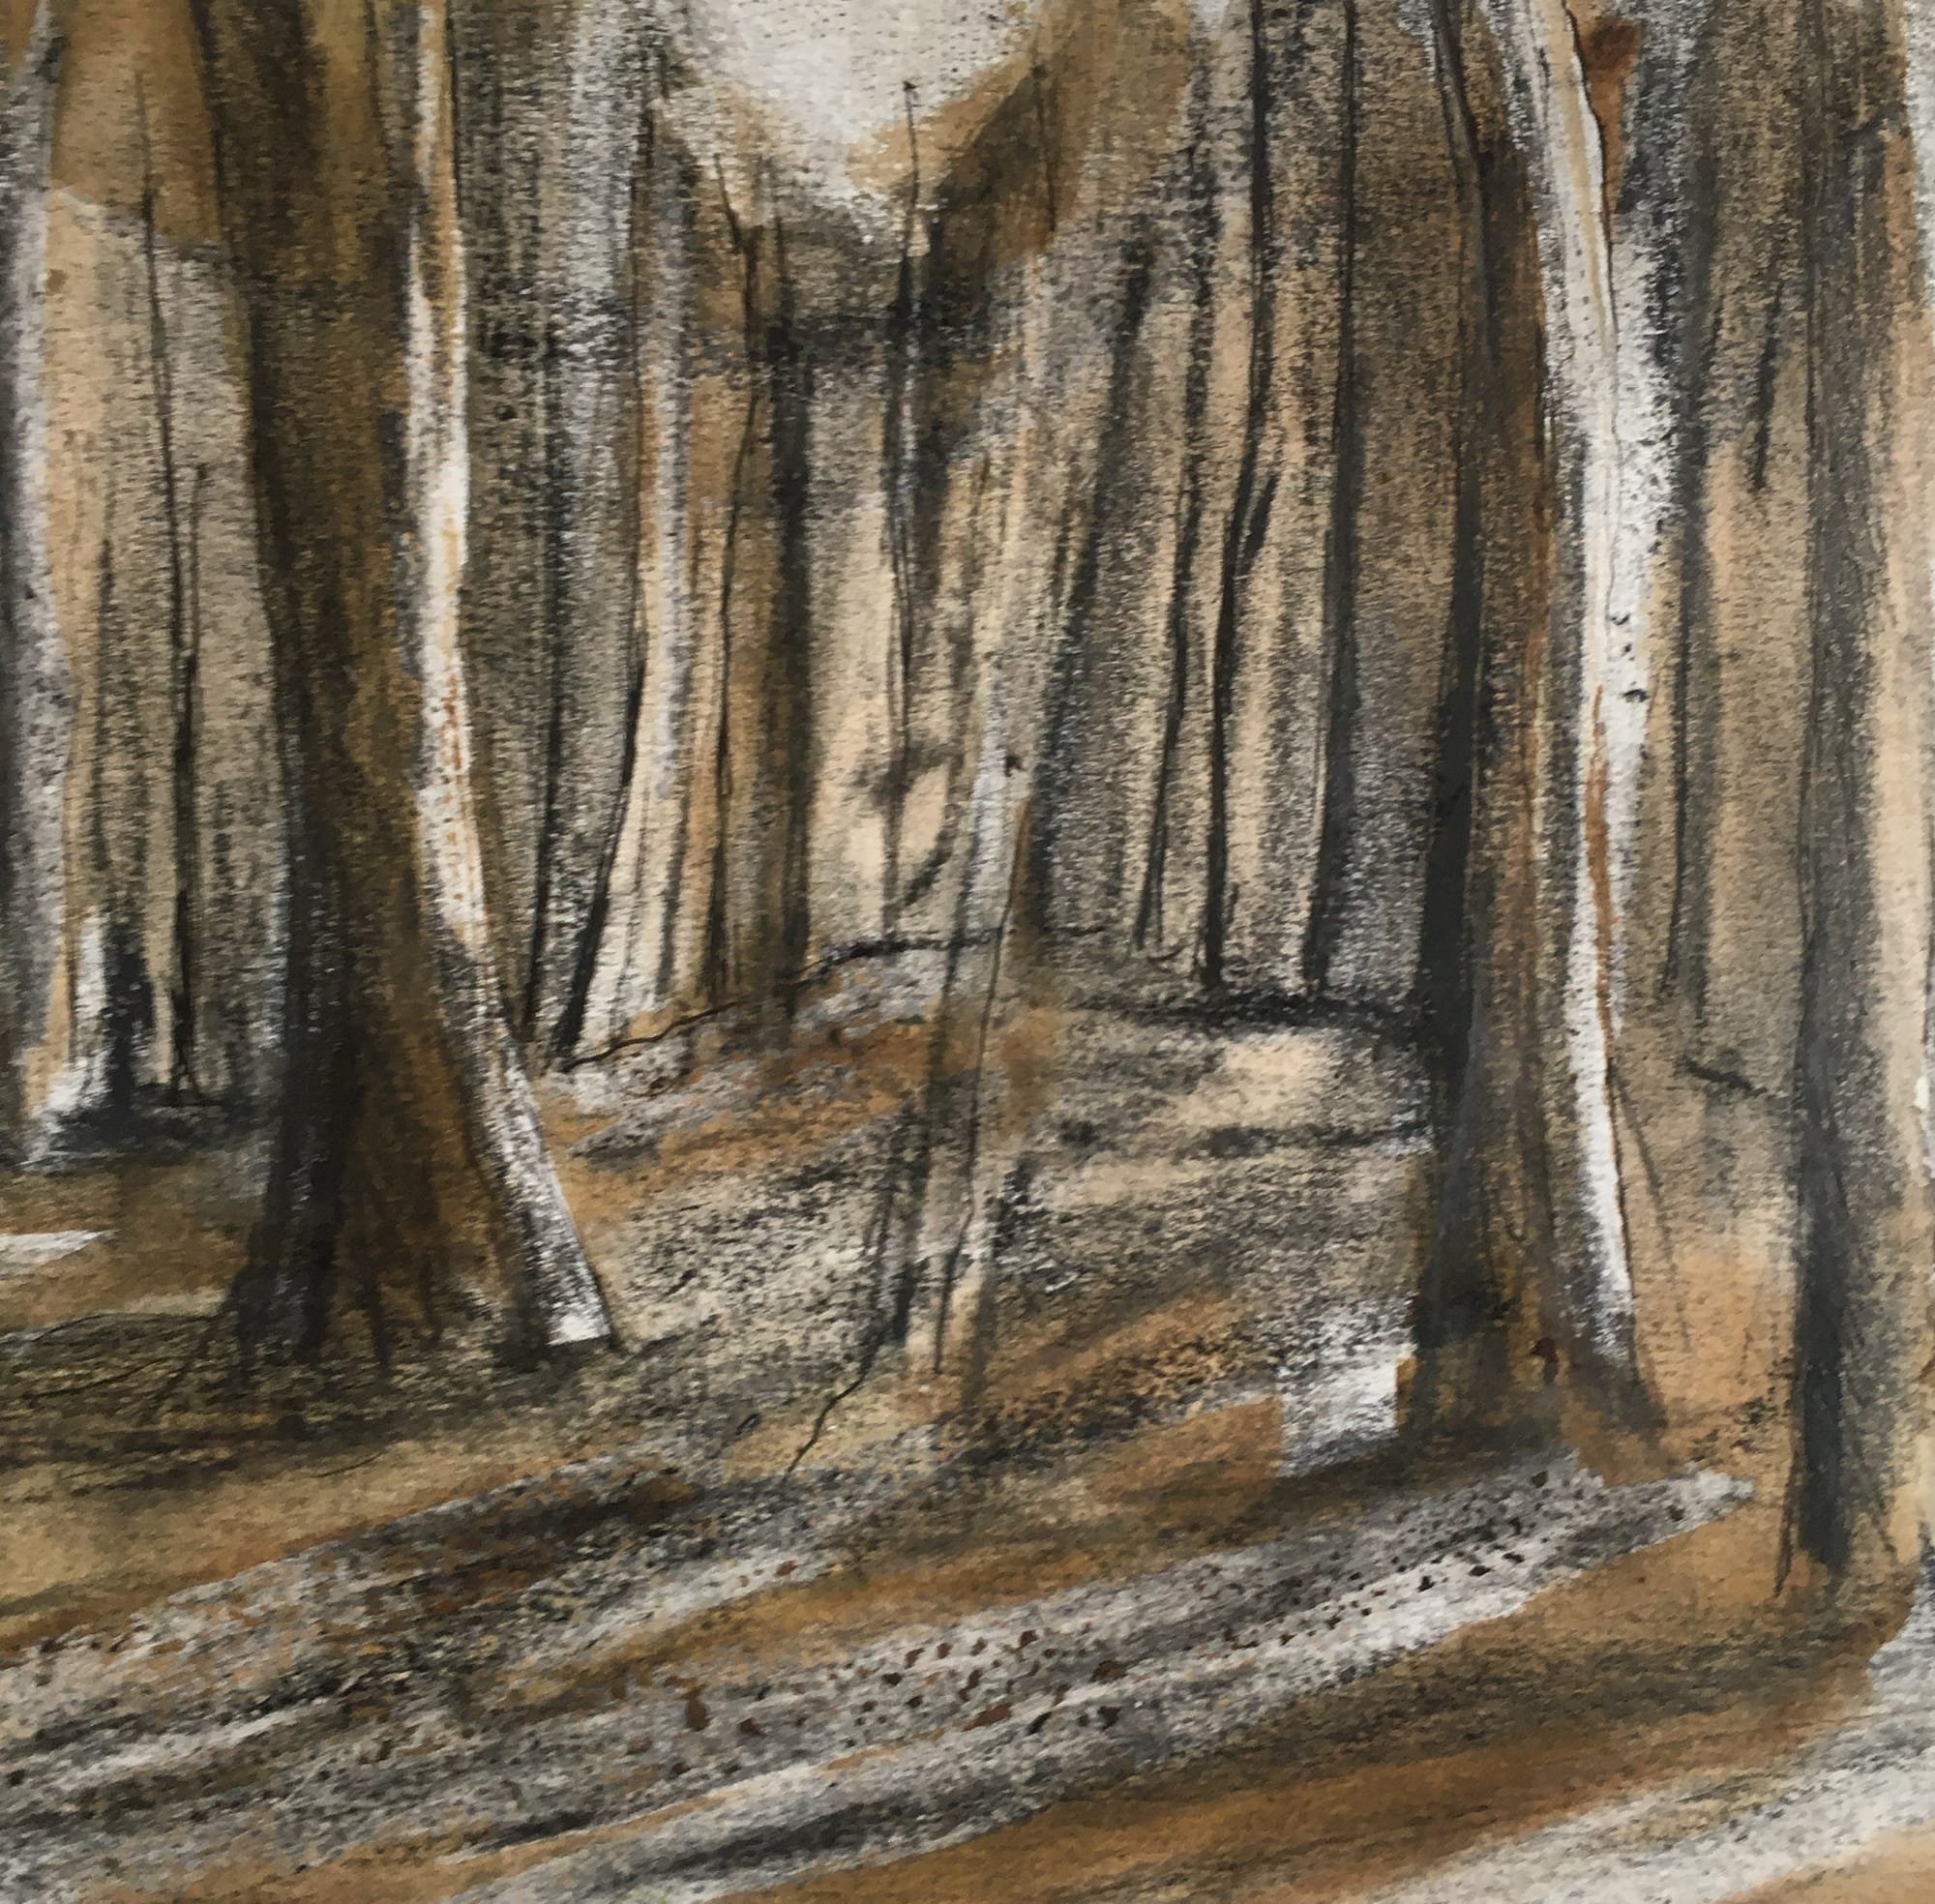 Delamere Forest charcoal sketch